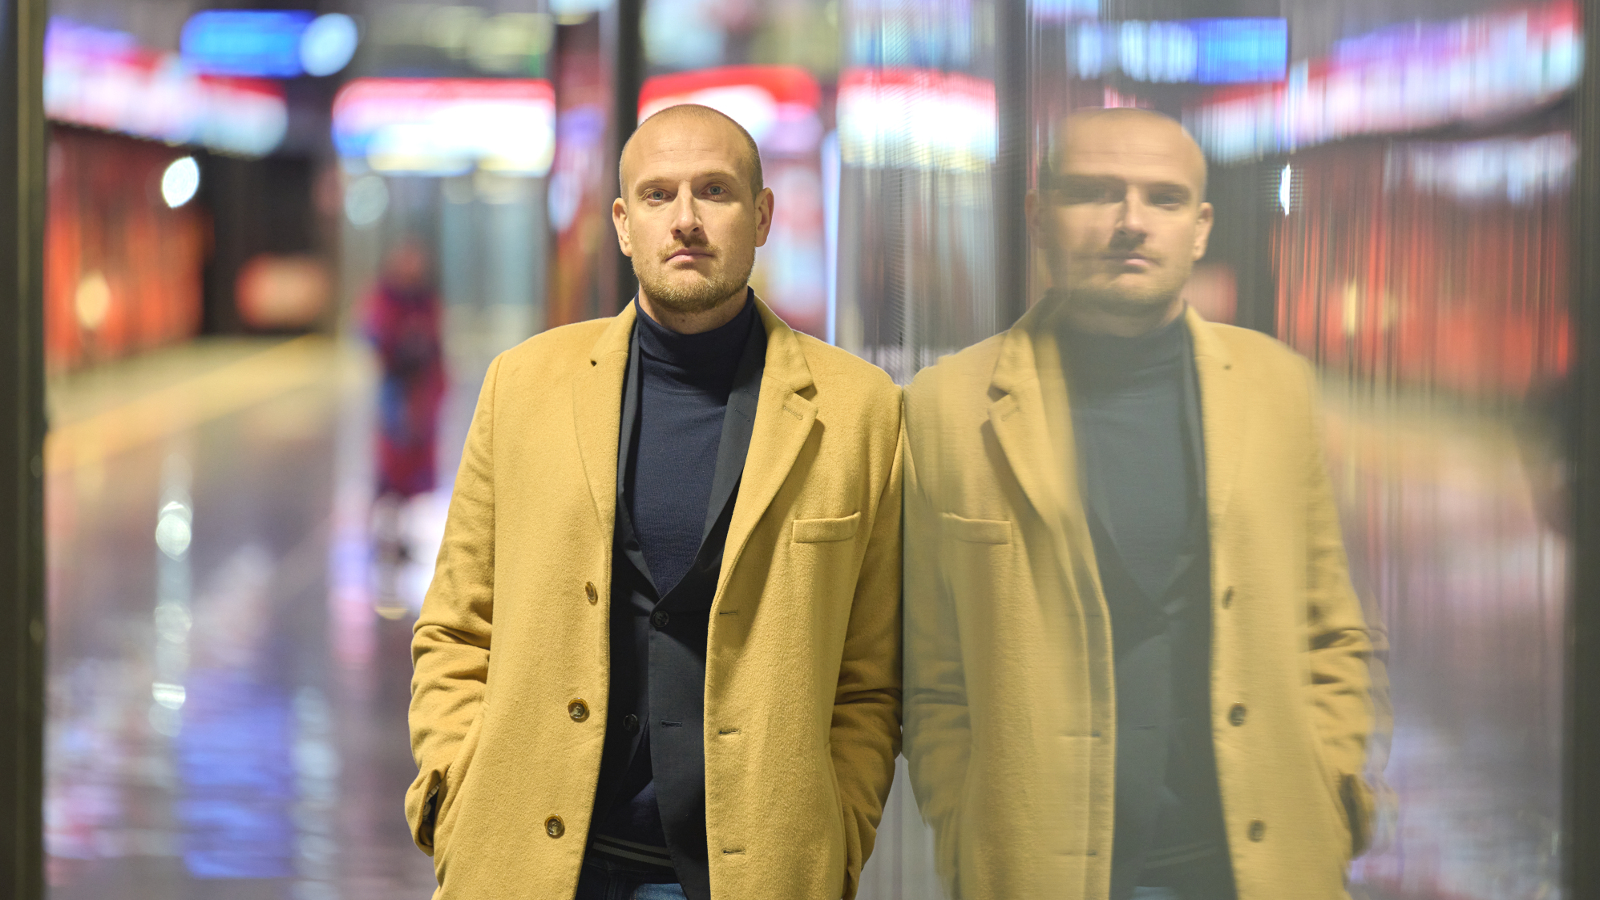 Kuvassa on Max Seeck keltaisessa takissa ja taustalla on himmennettynä Helsingin metroasemalaituria. Seeck on kahdennettu oikealle himmeämmin kuin vasemmalla eli on peilikuvassa.